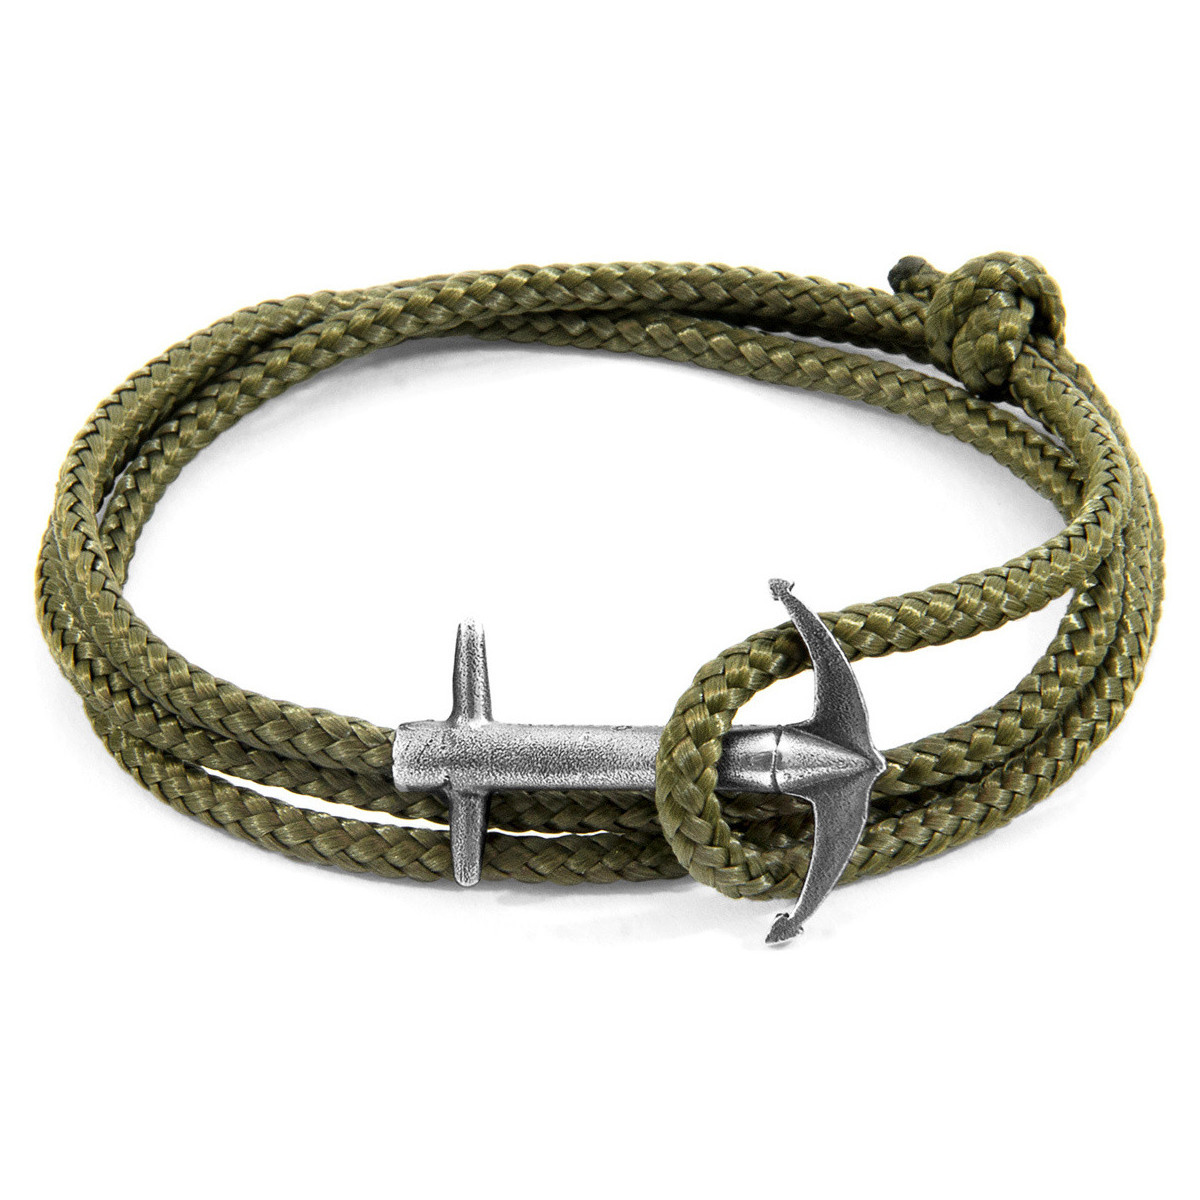 Montres & Bijoux Homme Bracelets Anchor & Crew Bracelet Ancre Admiral Argenté Et Corde Vert